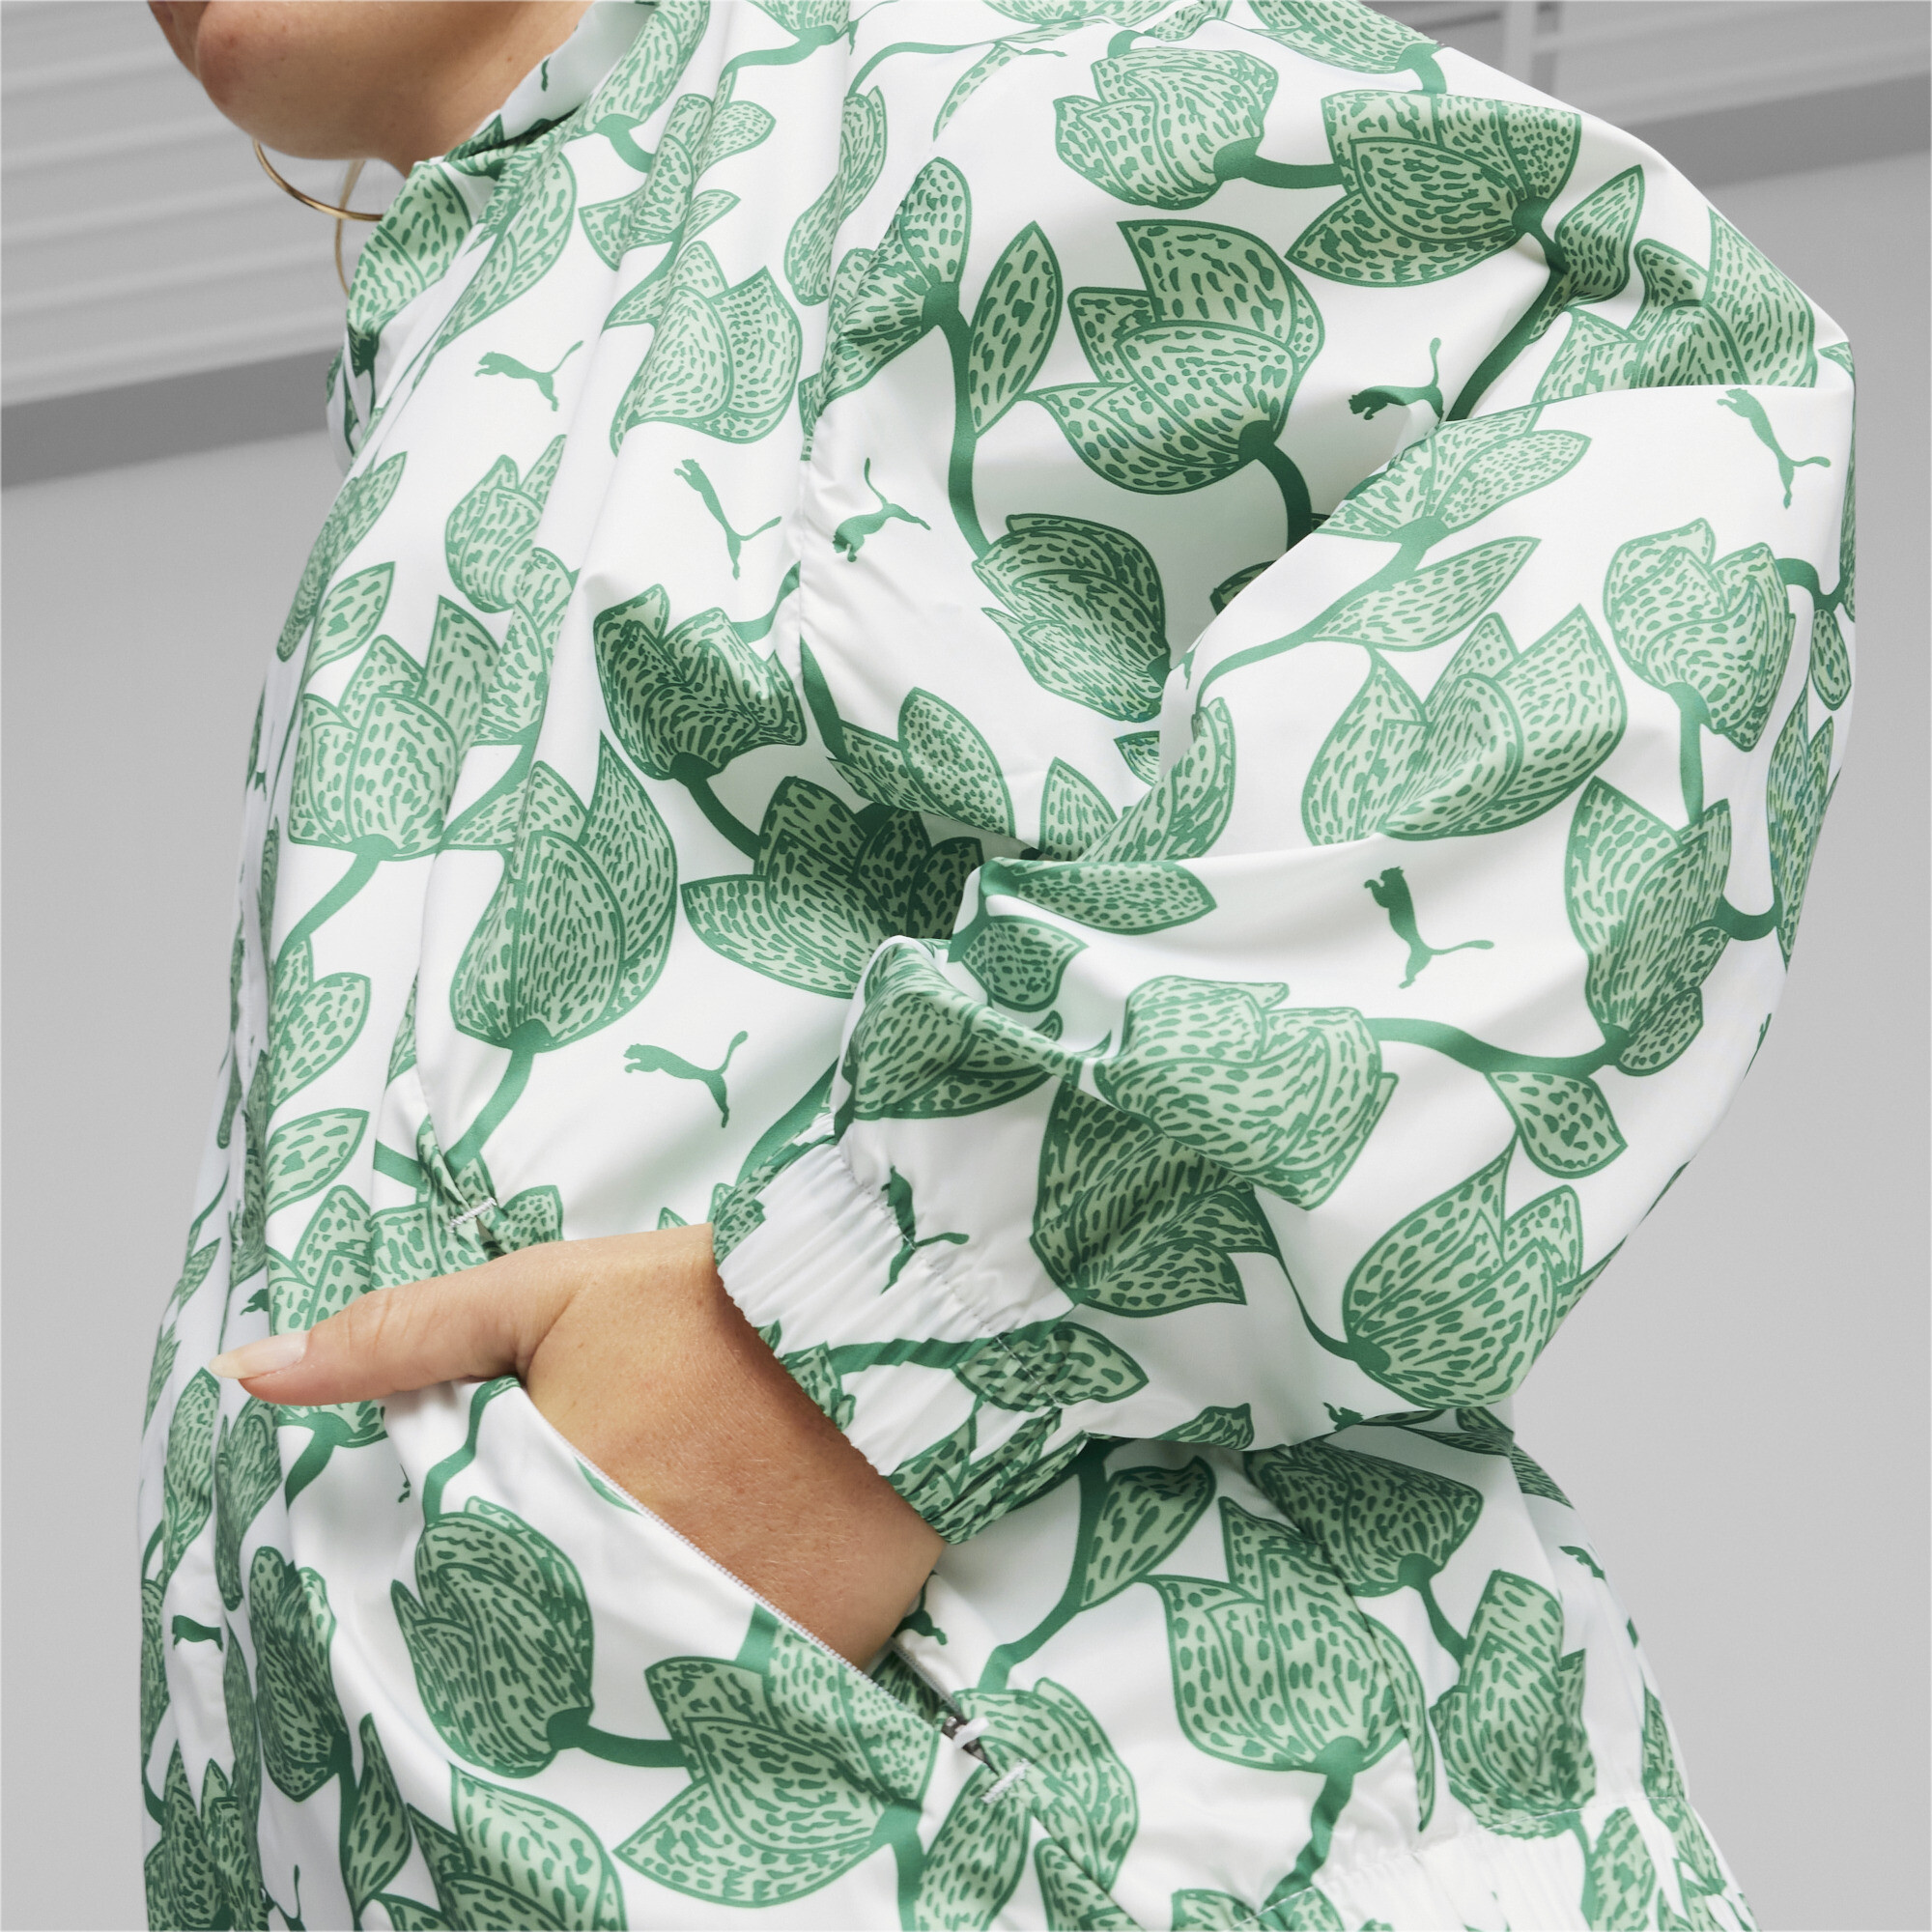 Women's PUMA Blossom All-Over Print Windbreaker In Green, Size Small